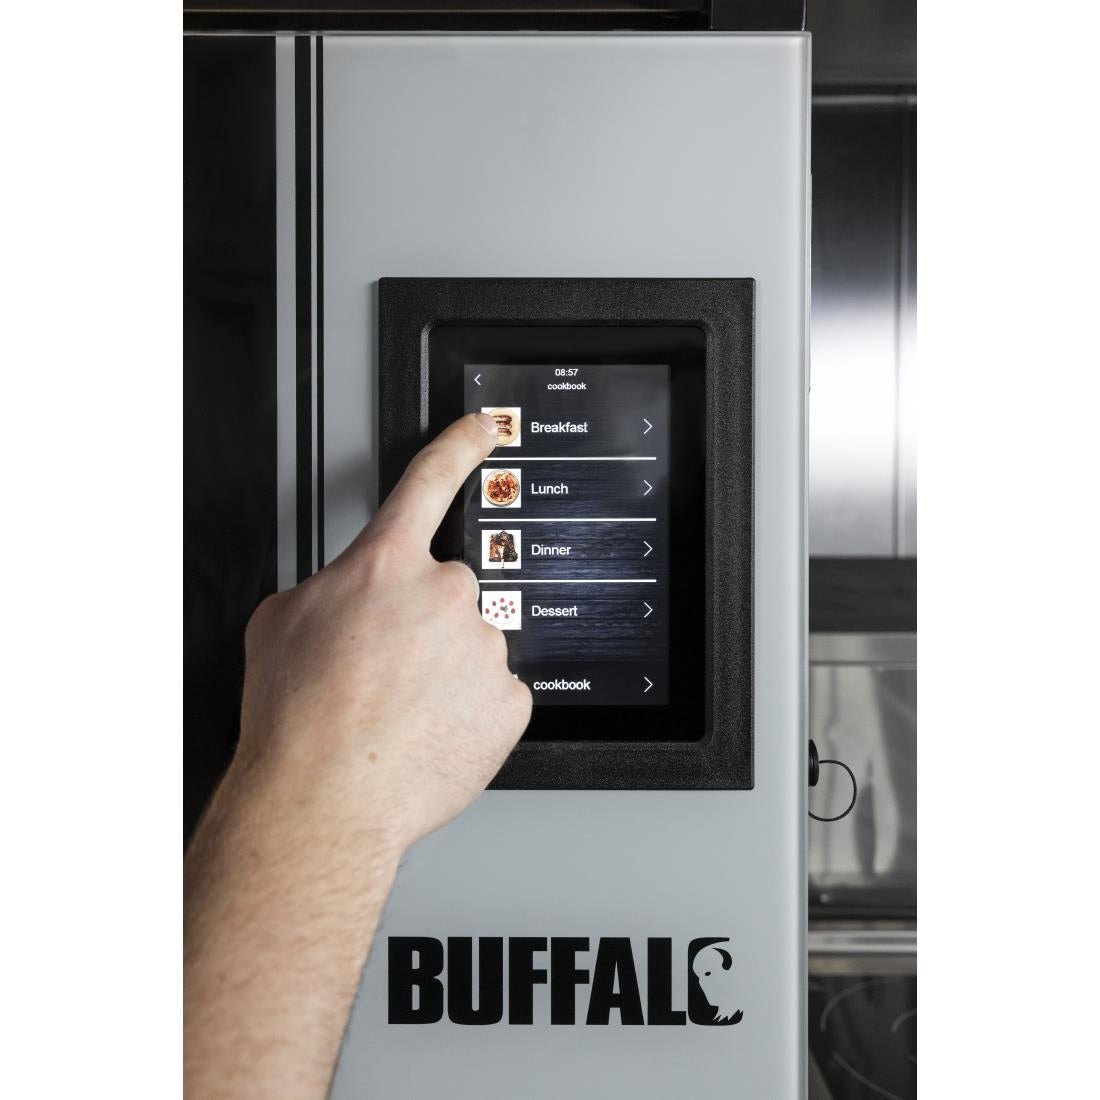 Buffalo Smart Touchscreen Combi Oven 7 x GN 1/1 CK079 JD Catering Equipment Solutions Ltd